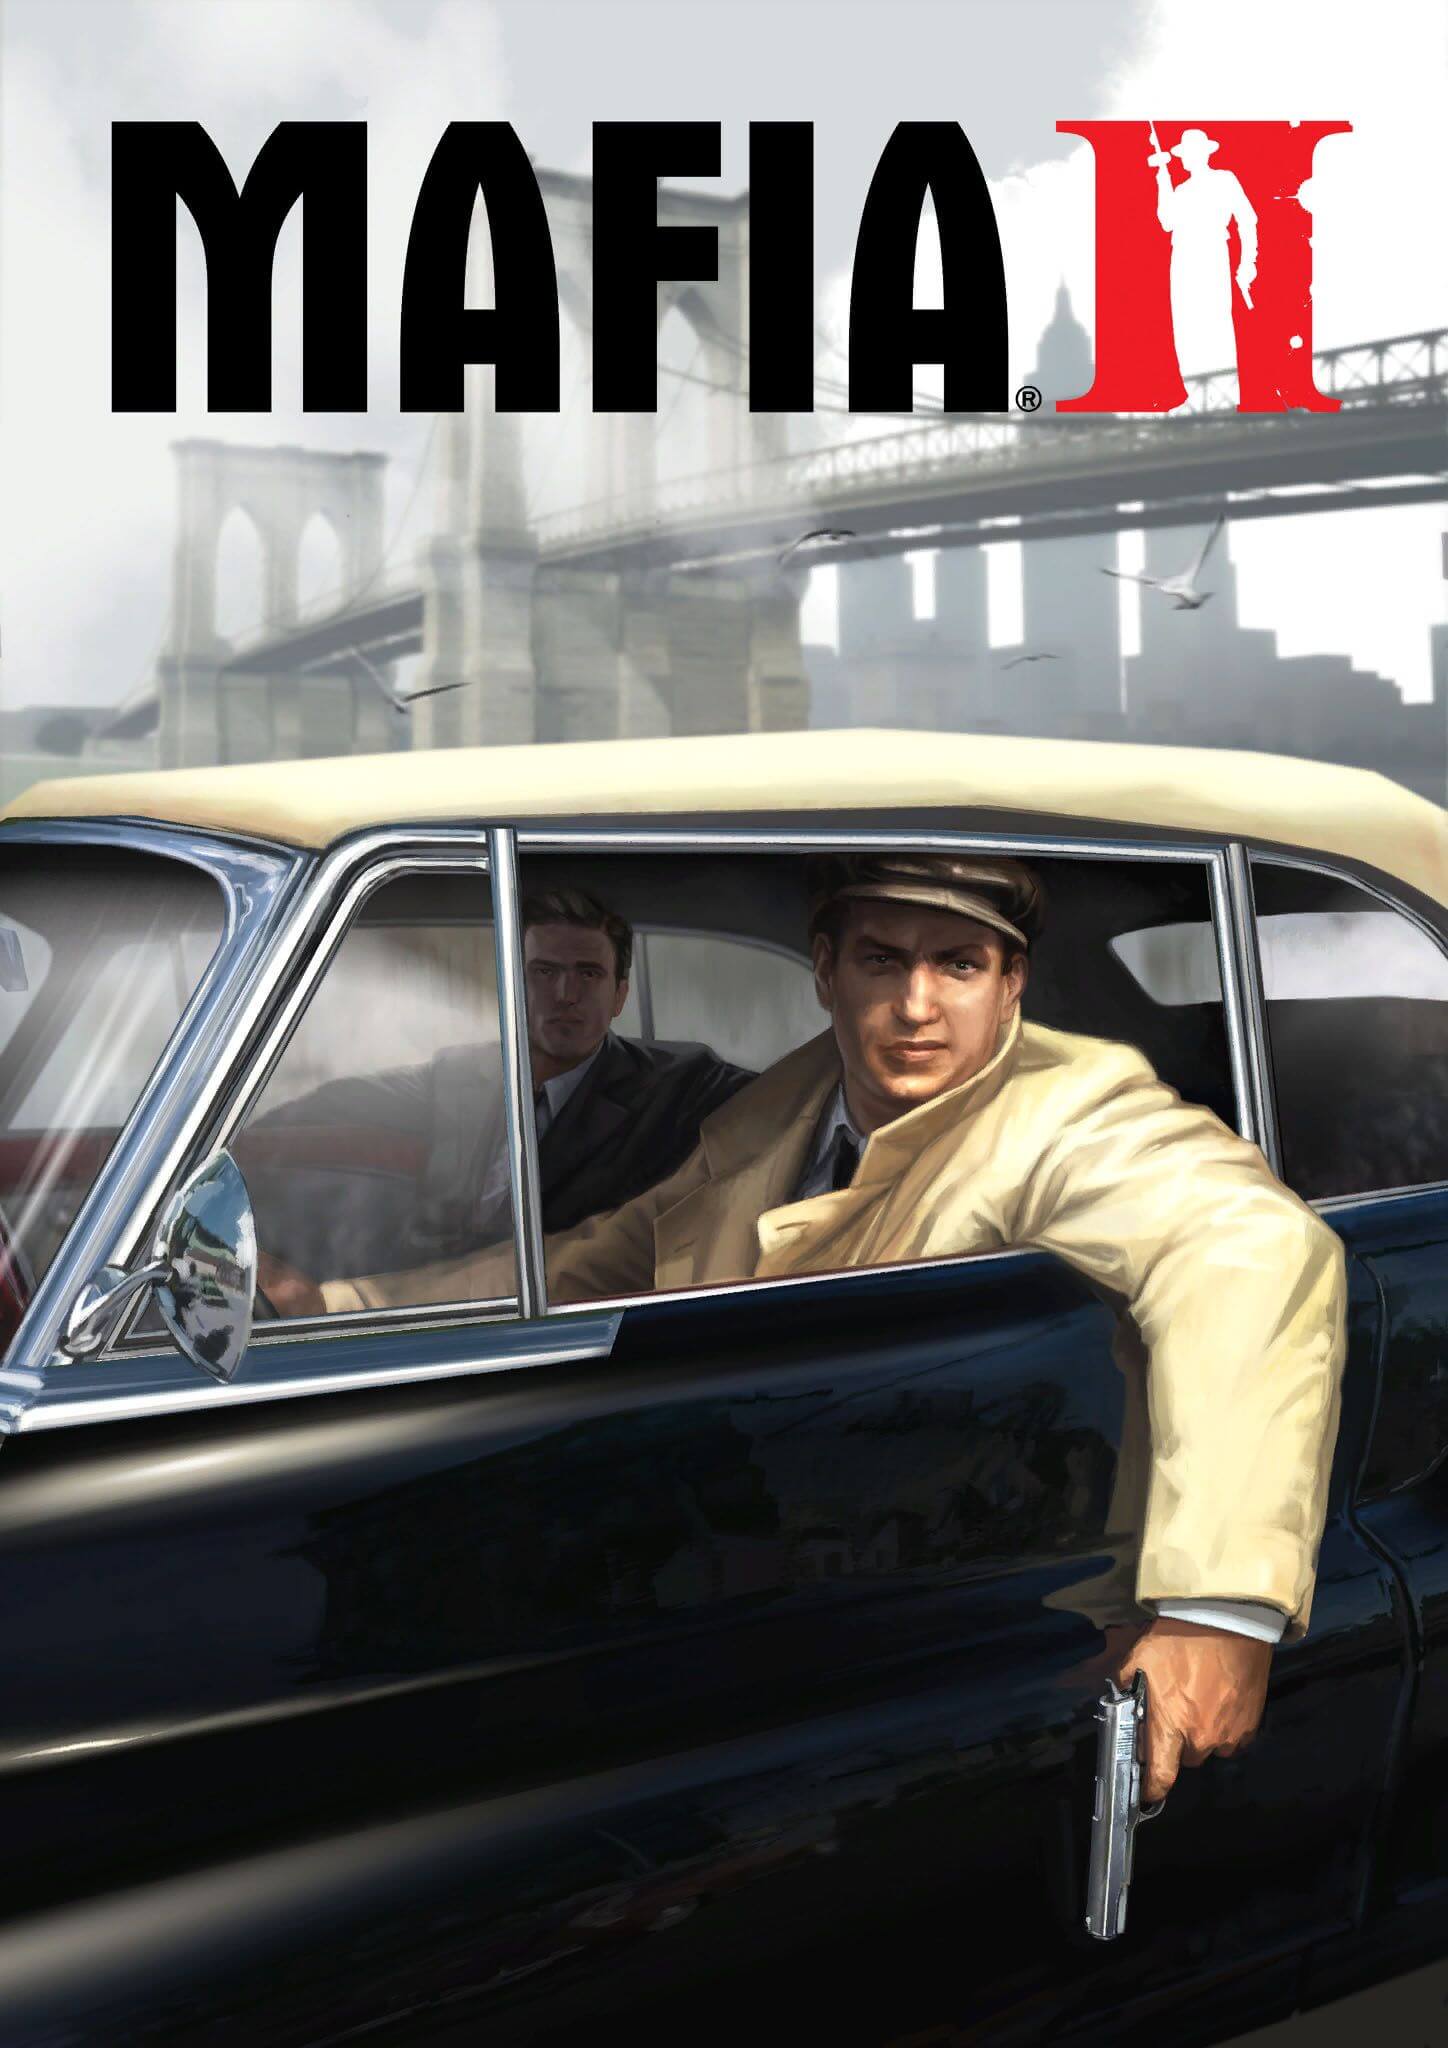 mafia 2 release date download free